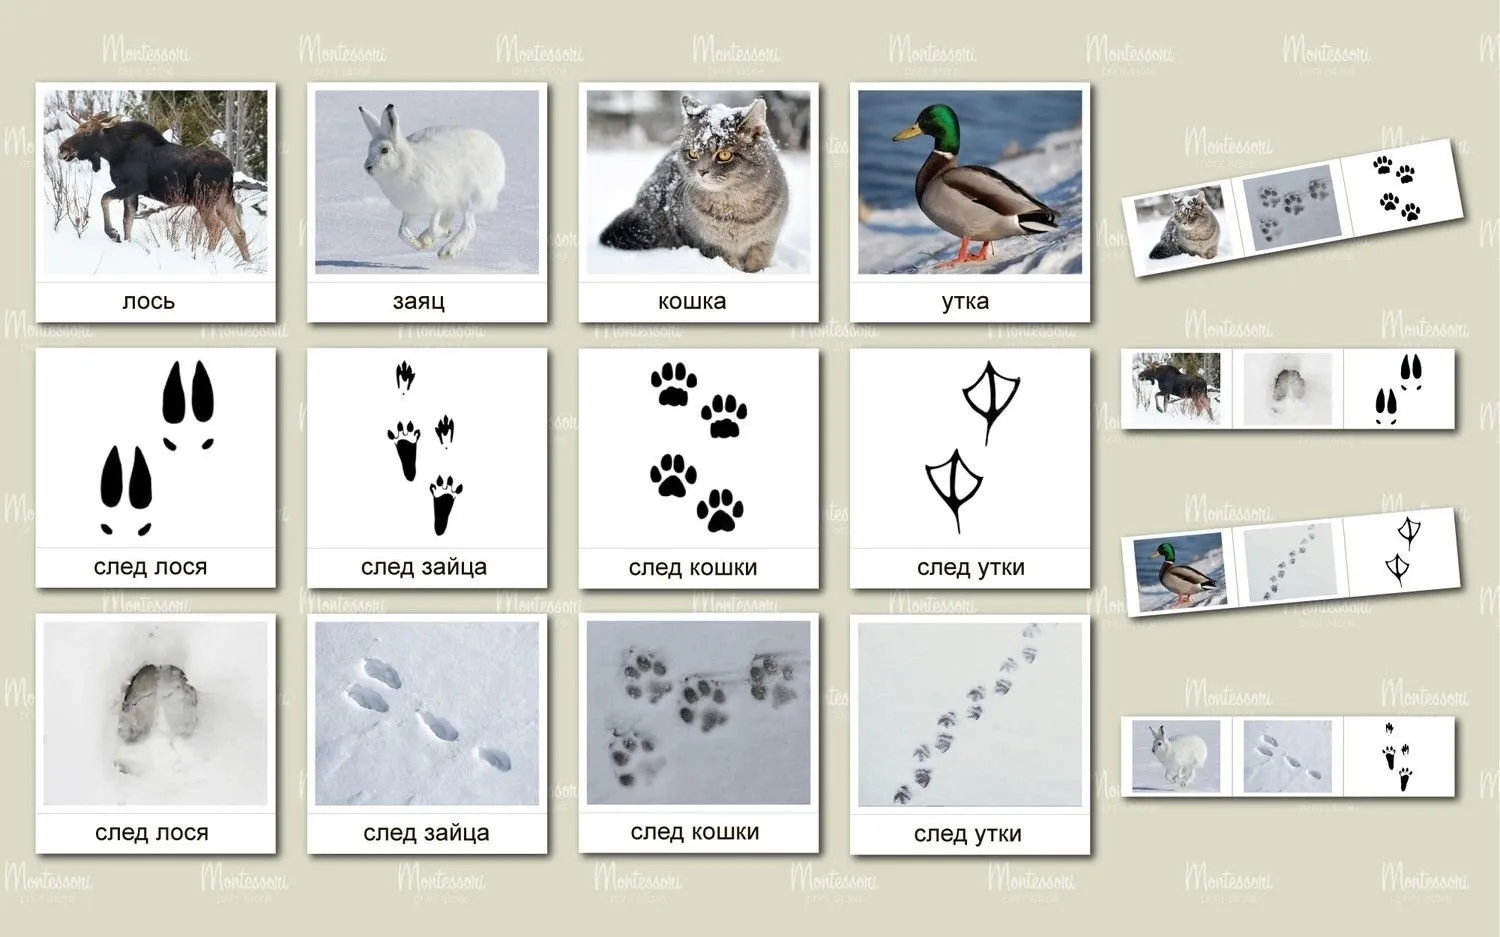 Следы животных и птиц на снегу – схемы с названиями